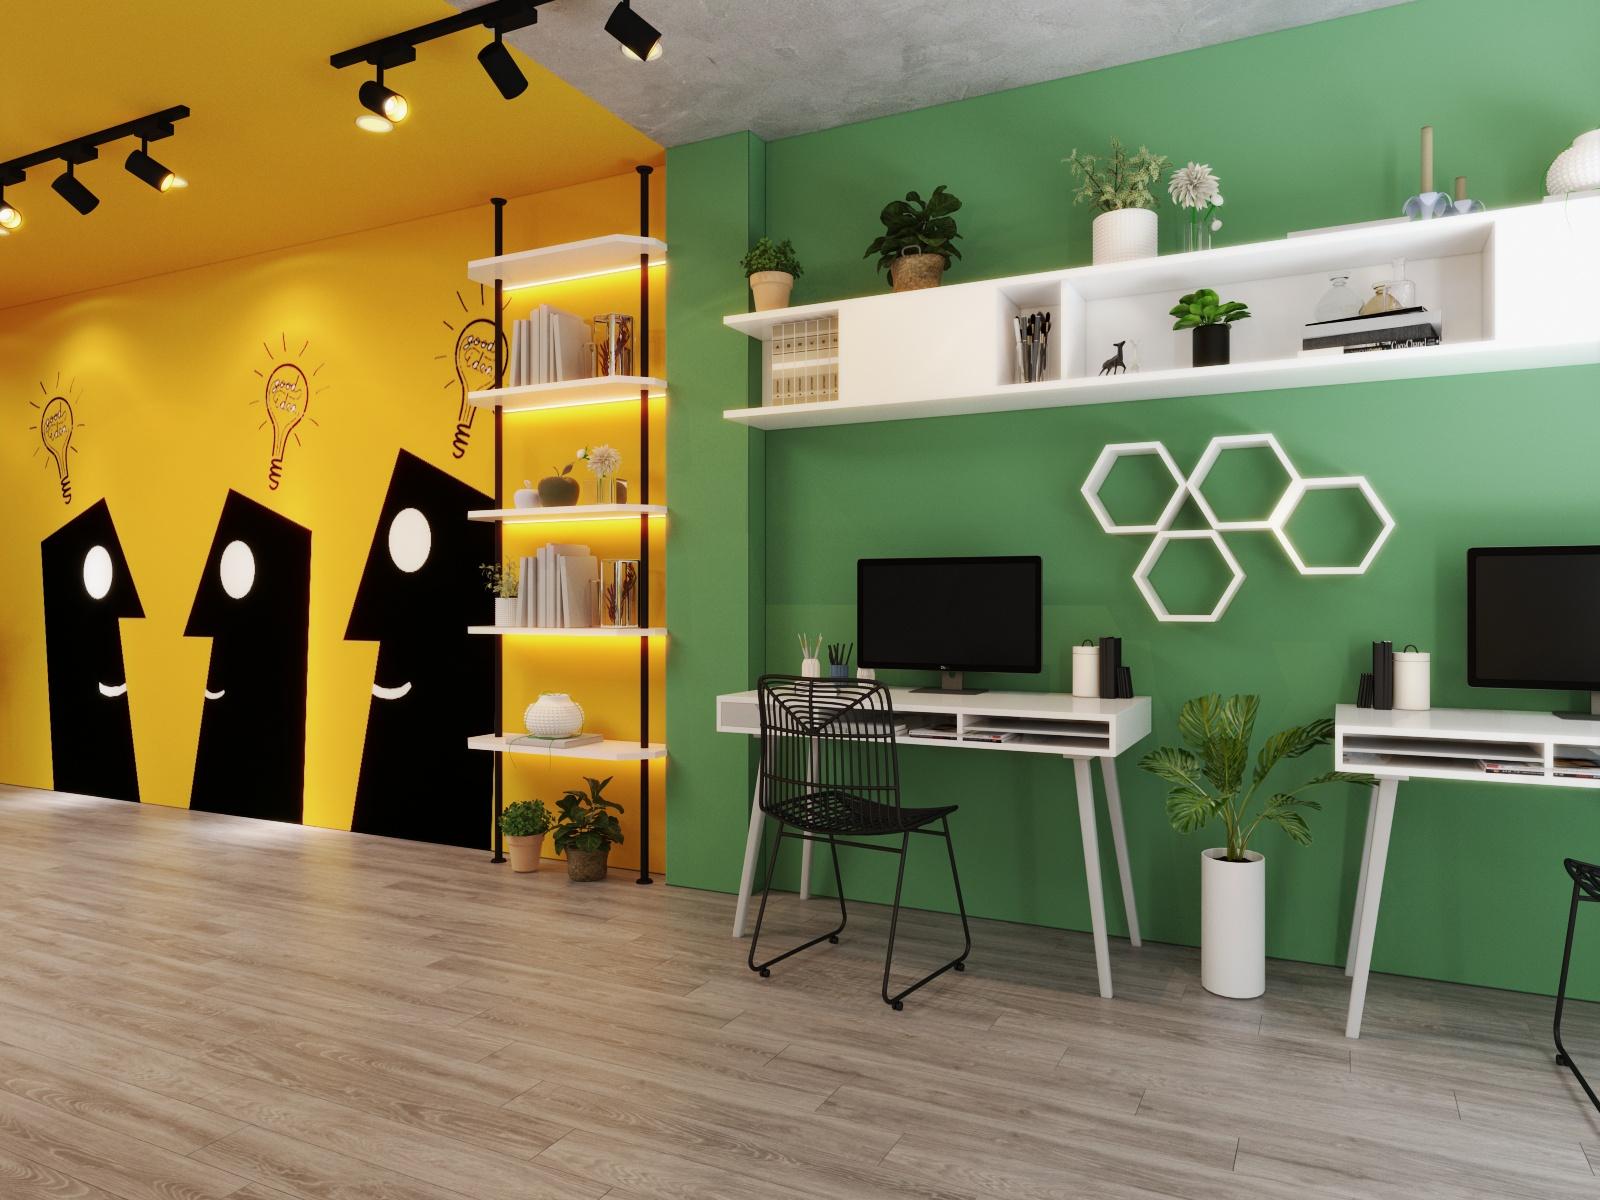 Kiến trúc sư lựa chọn nội thất văn phòng kiểu dáng gọn xinh, thanh thoát nhằm tiết kiệm diện tích, tối ưu hóa không gian sử dụng.